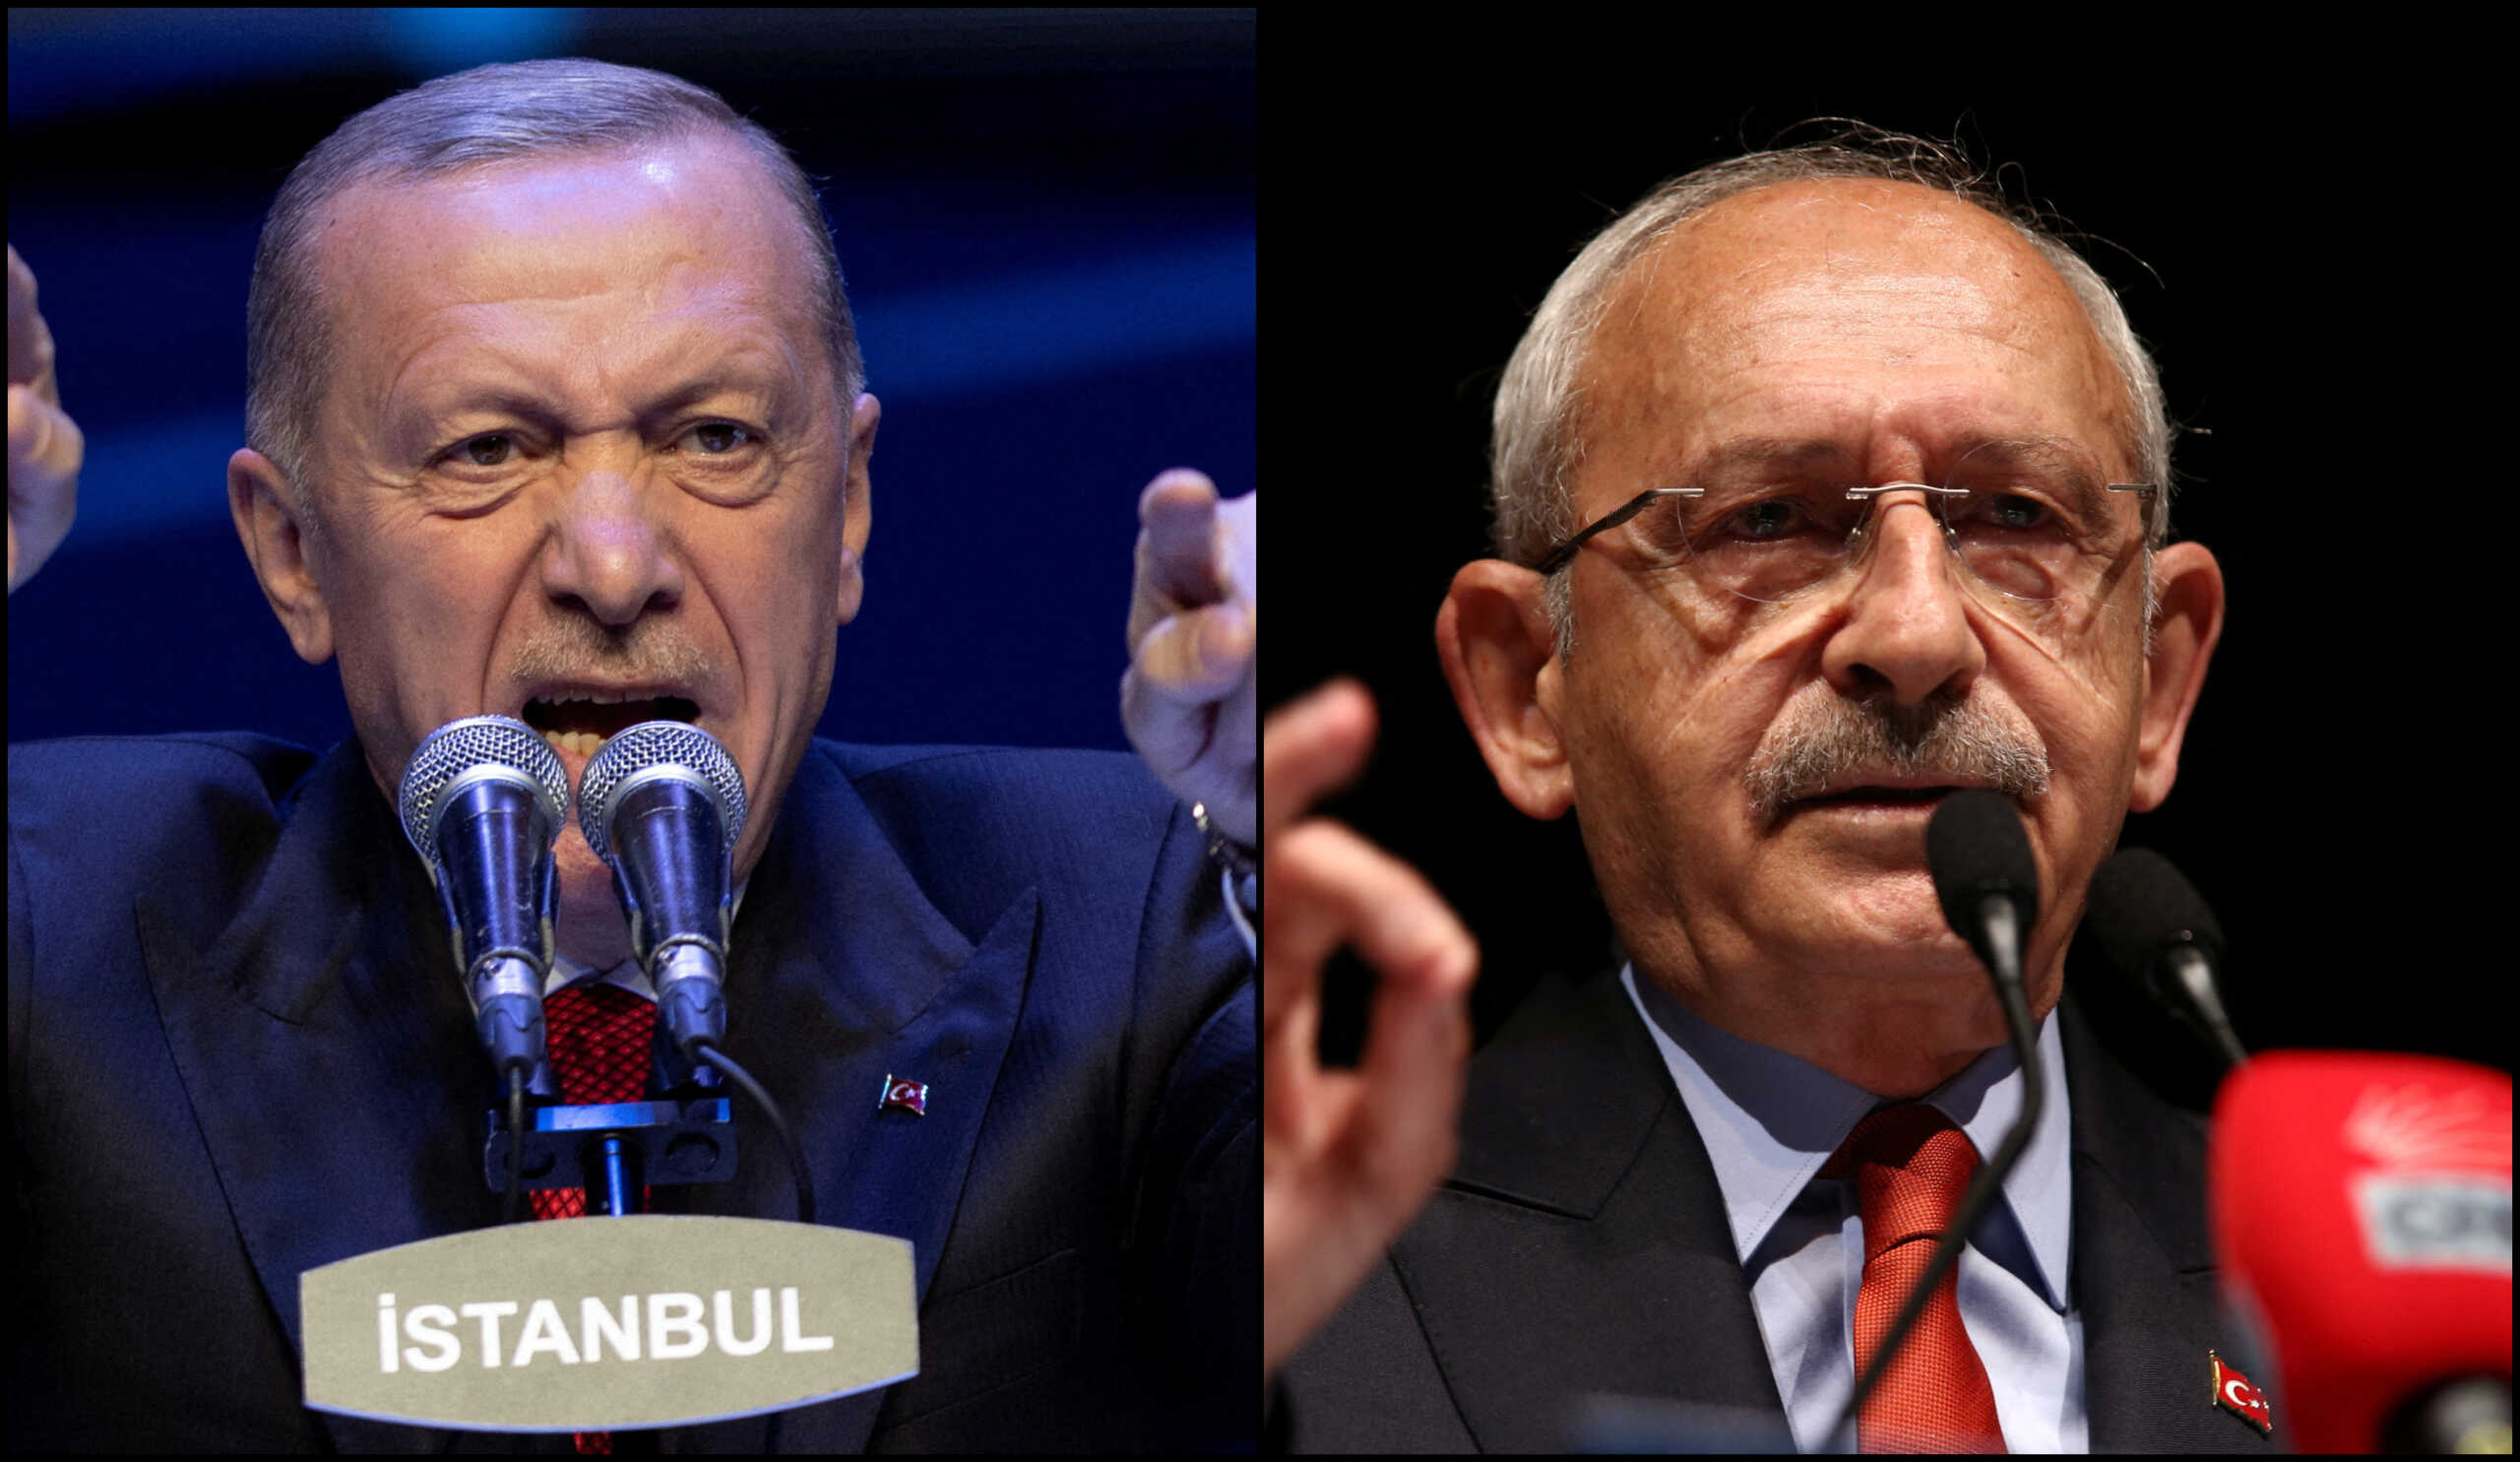 Εκλογές στην Τουρκία: Αυτά είναι τα τελικά αποτελέσματα – Στο 49,52% ο Ερντογάν, στο 44,88% ο Κιλιτσντάρογλου